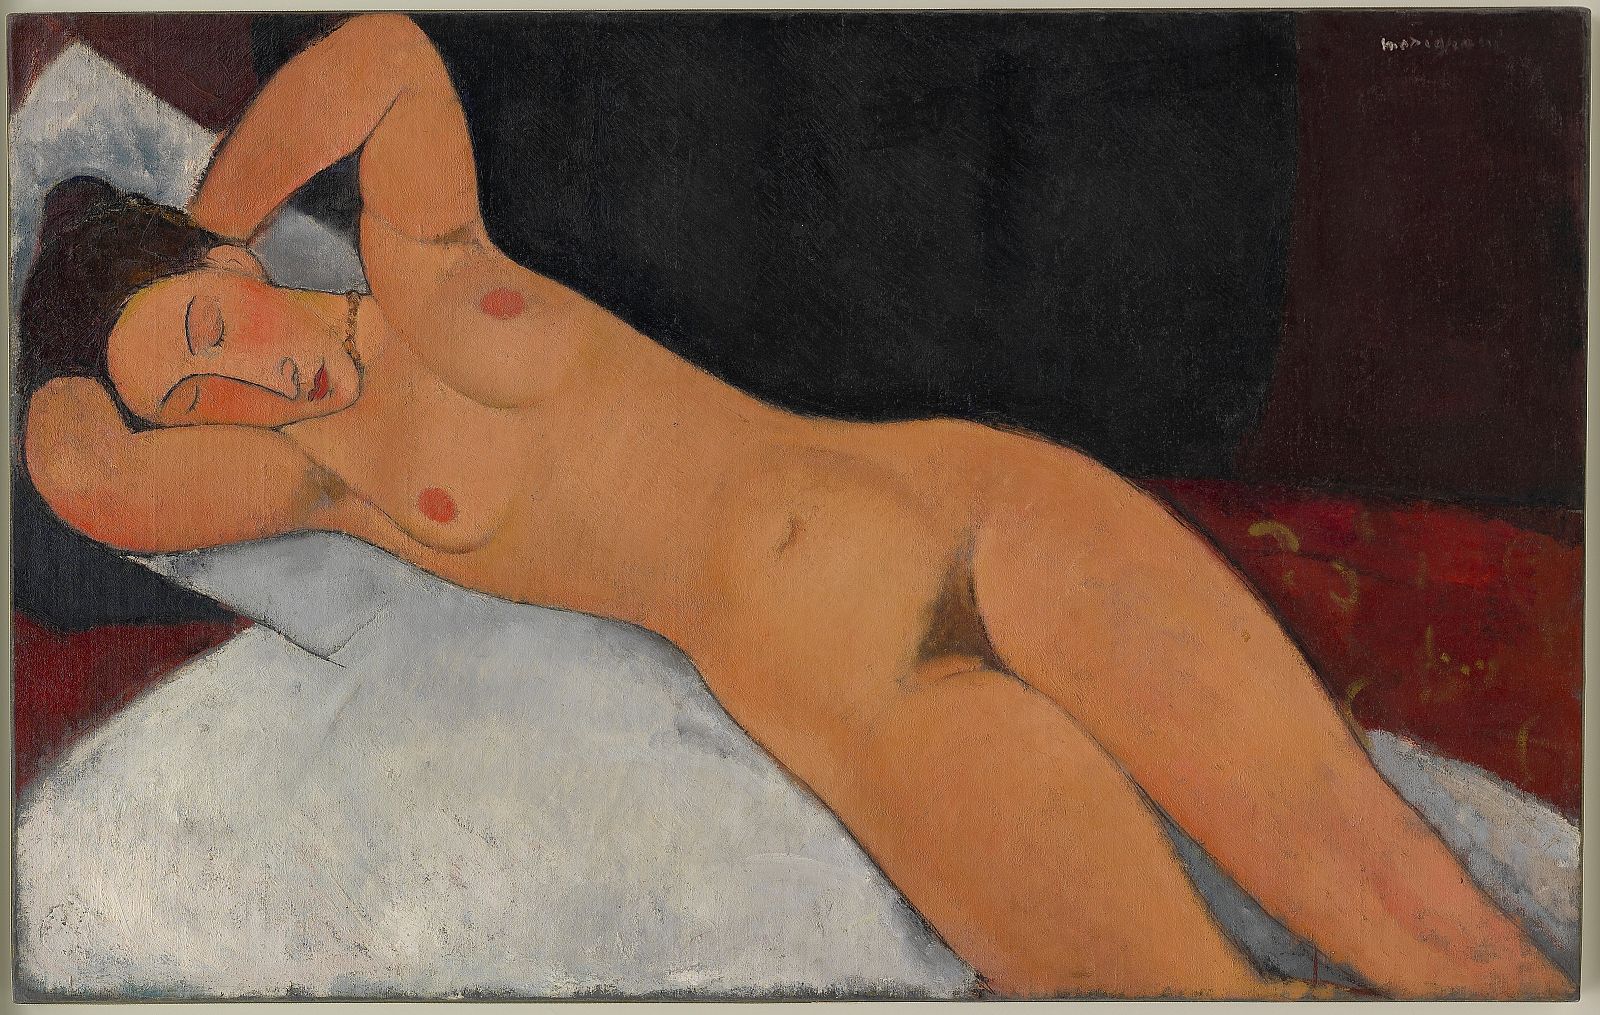 Amedeo Modigliani, "Desnudo" (1917)